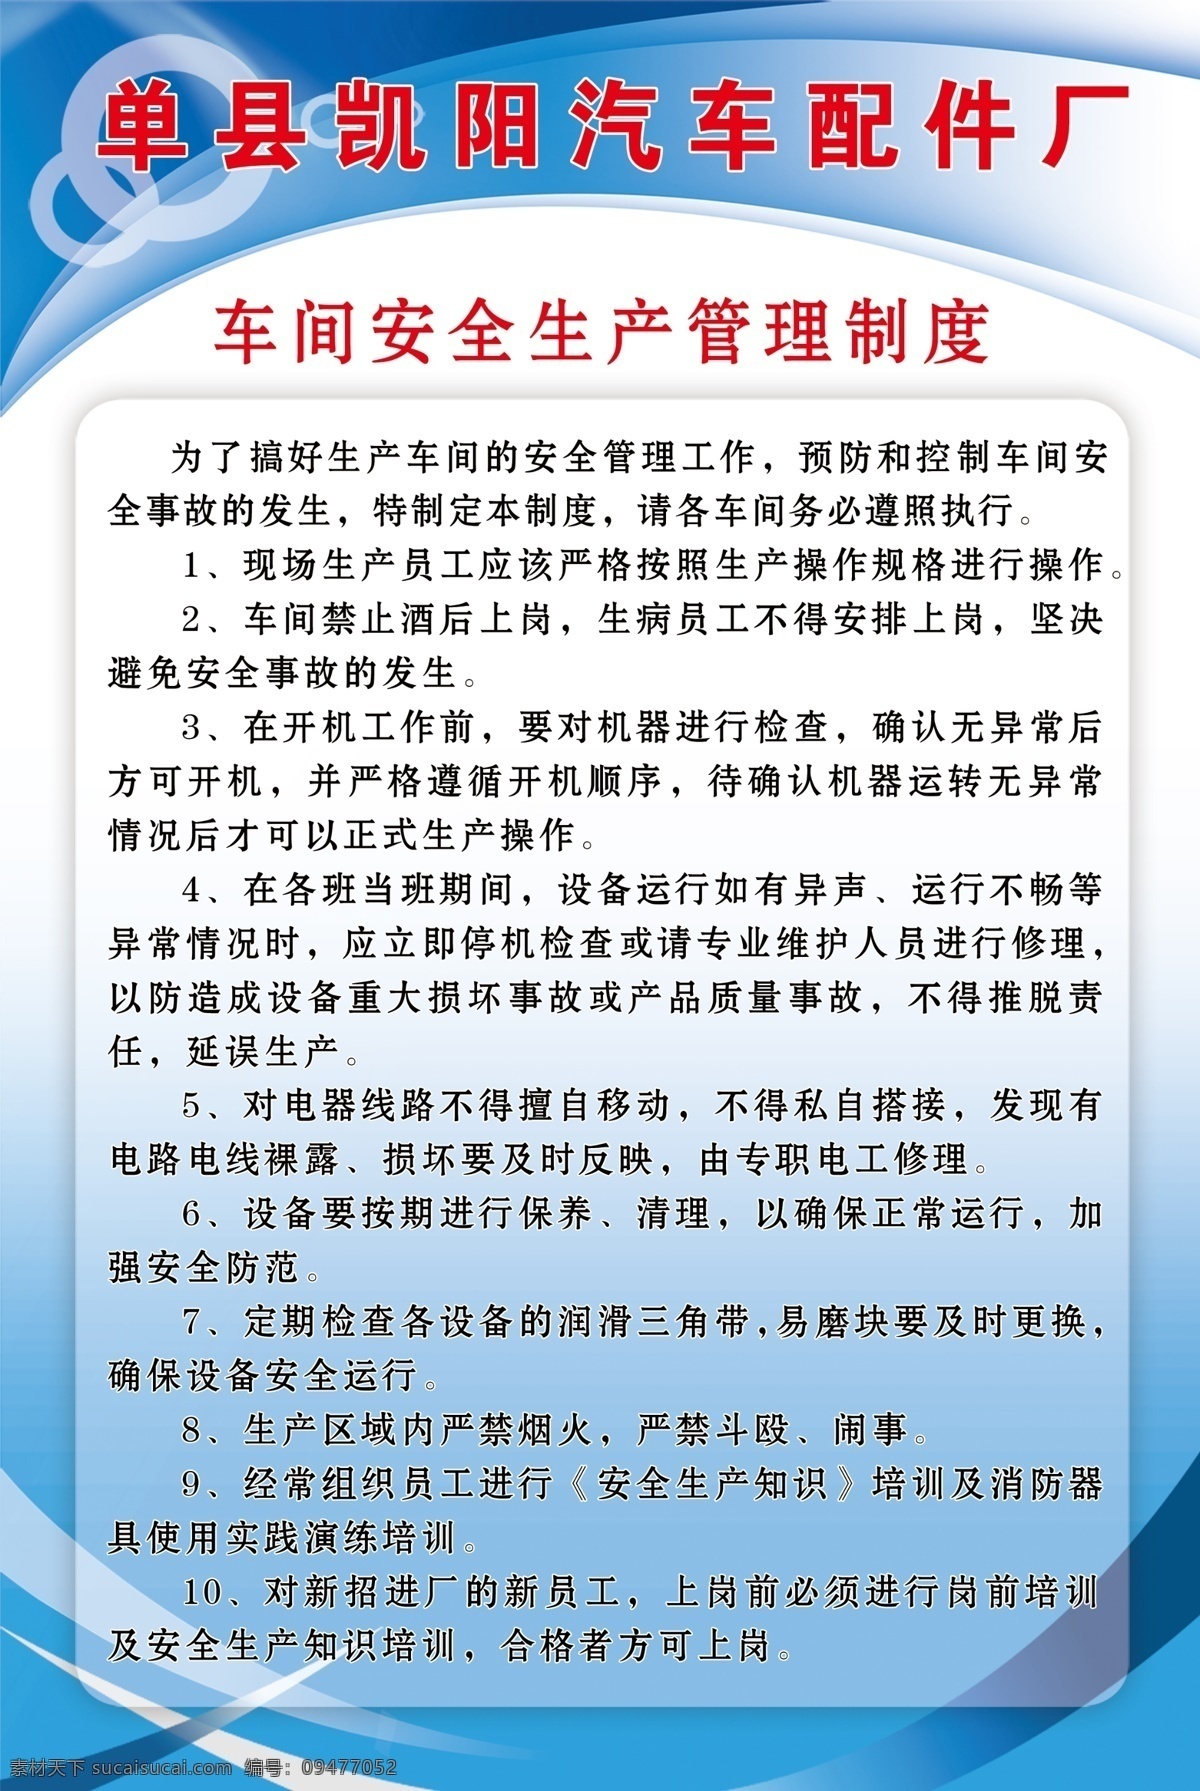 单县 凯 阳 汽车 配件厂 汽车配件厂 车间 安全 生产 管理制度